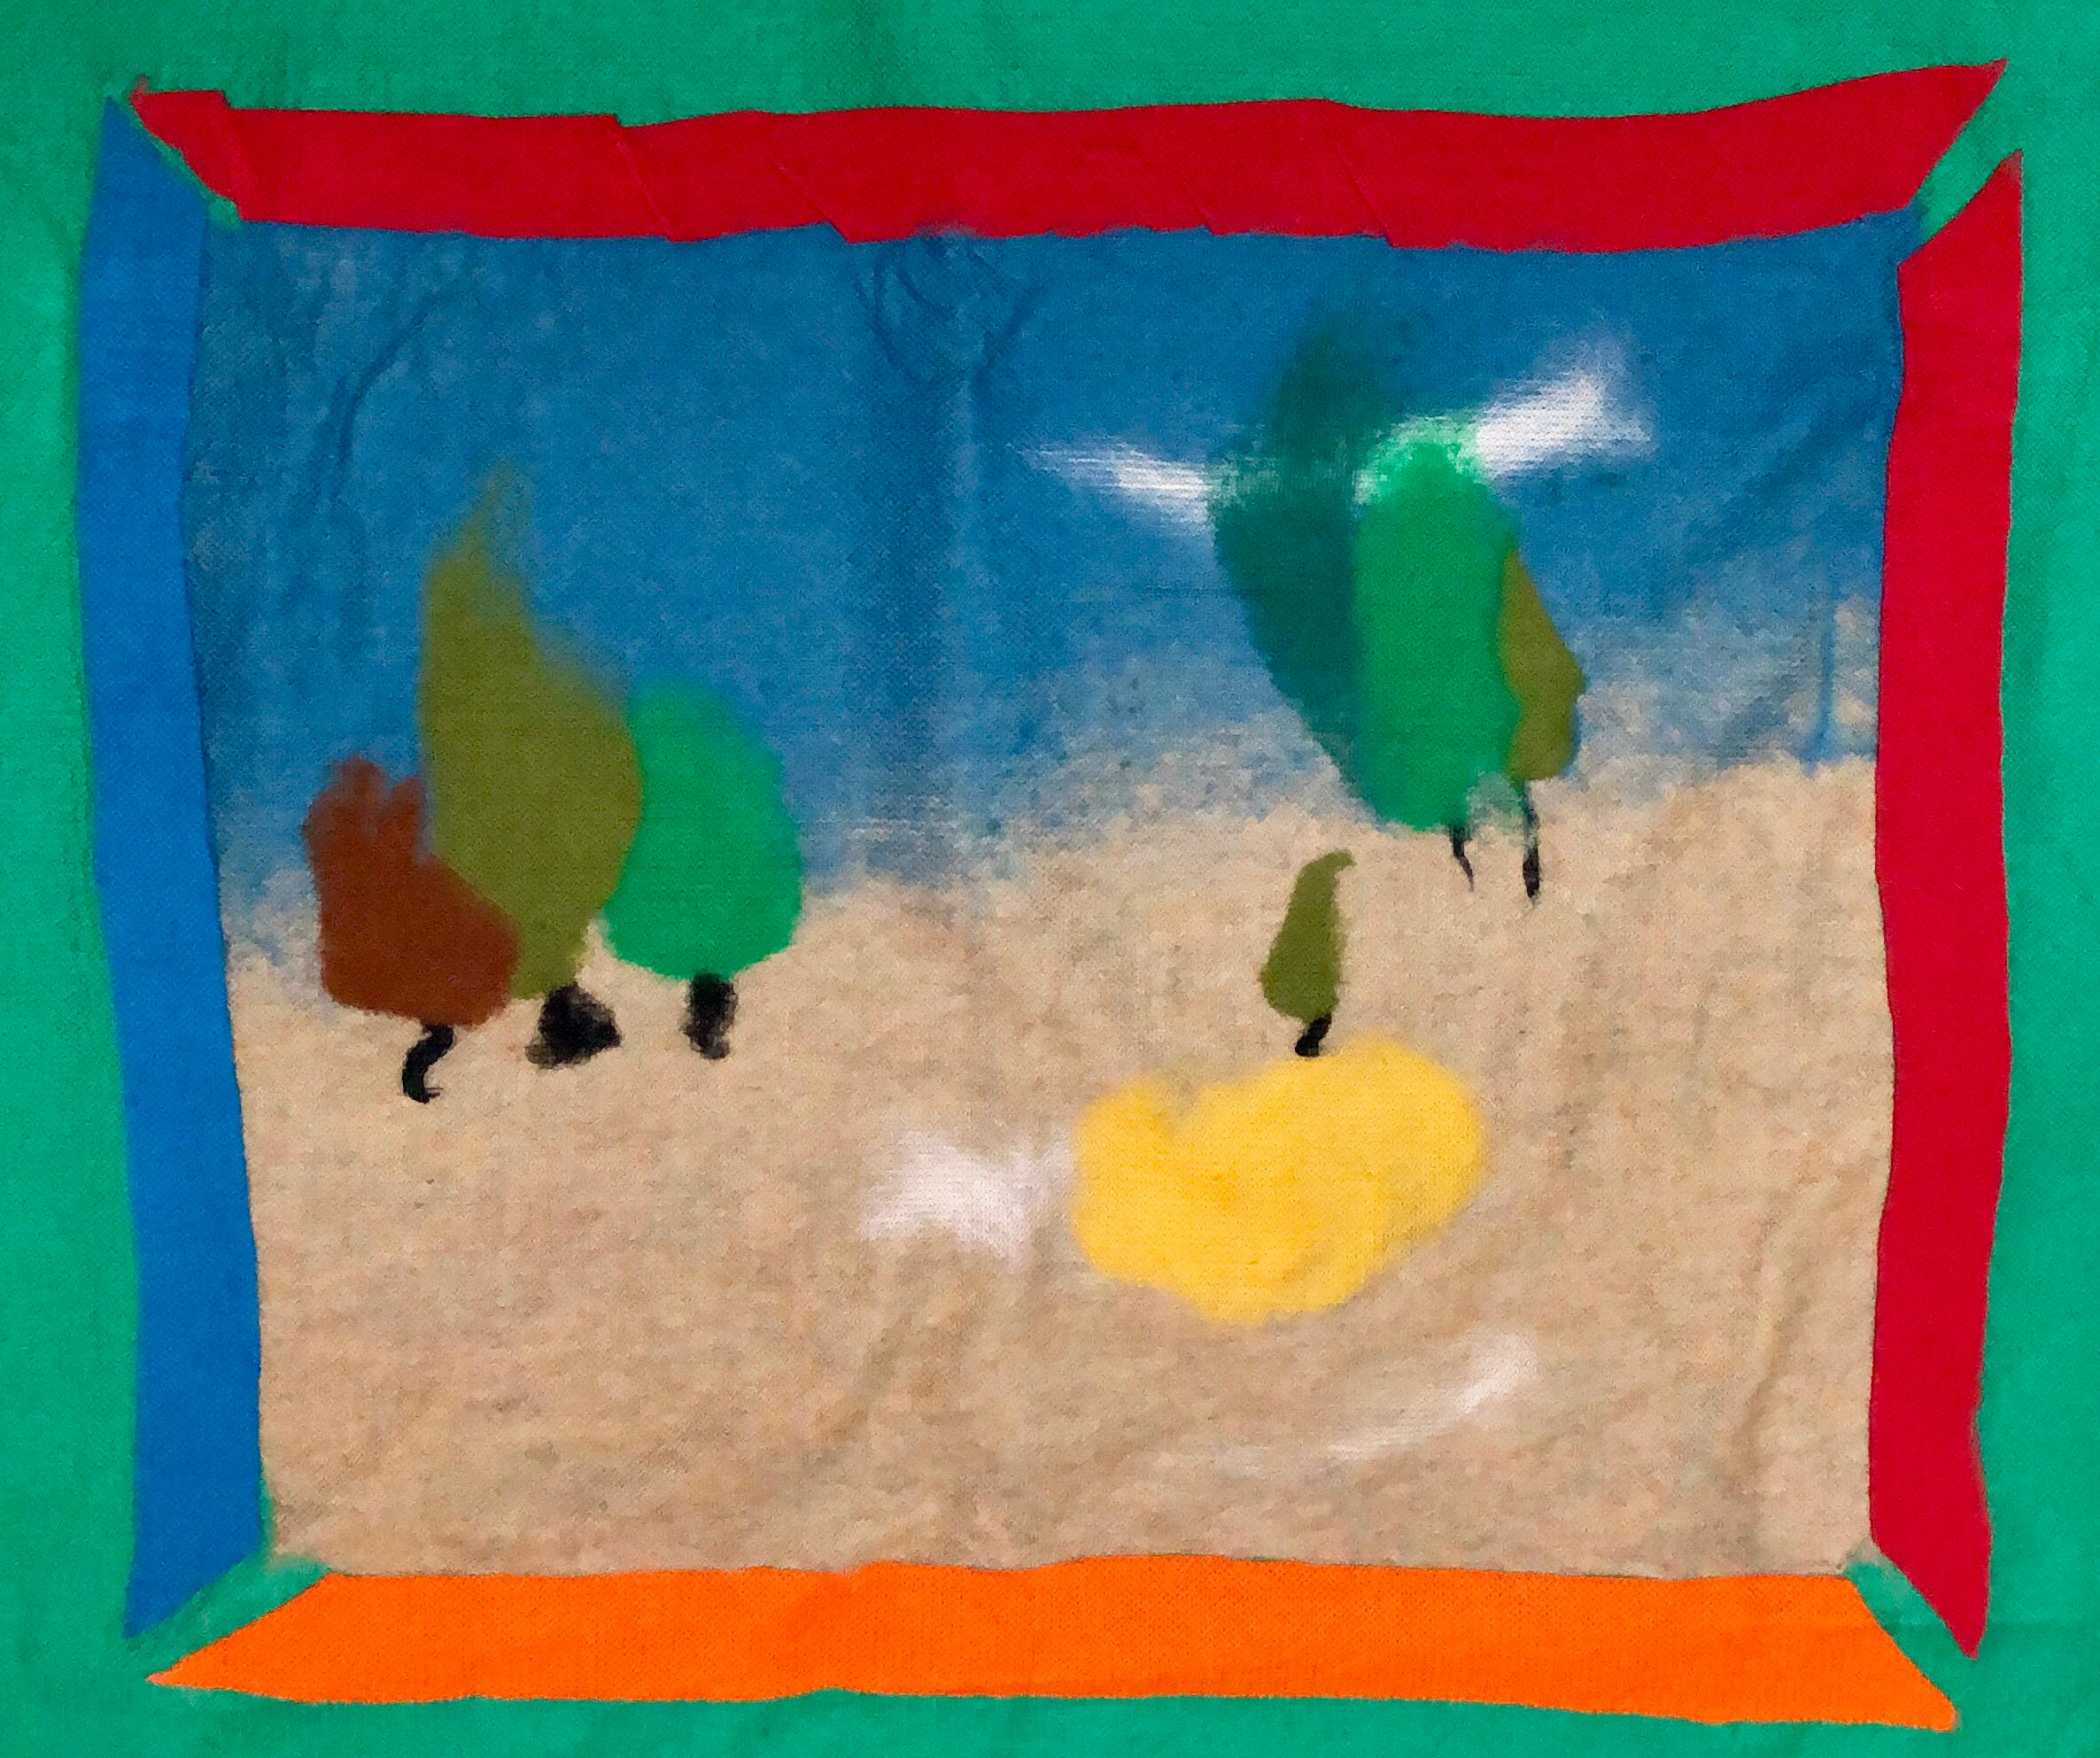 Großer farbenfroher Wandteppich aus Wolle, abstrakt-expressionistische Kunst Protis, 70er Jahre (Abstrakter Expressionismus), Mixed Media Art, von Robert Freimark